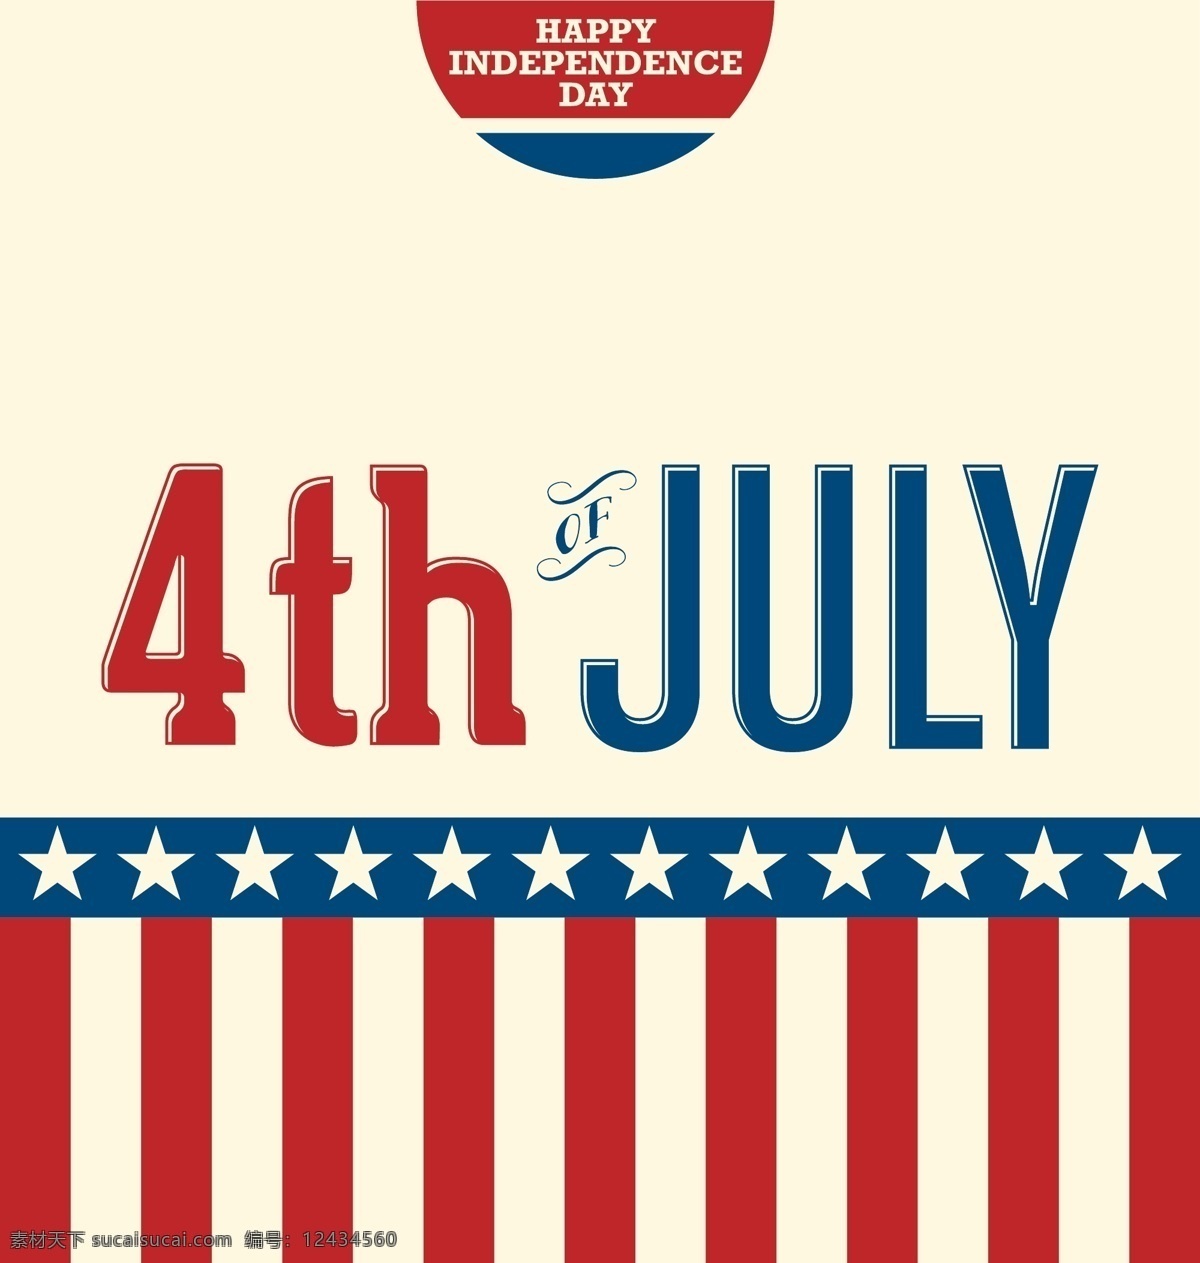 美国 独立日 背景 墙纸 庆典 假日 庆祝 传统 自由 选举 日 爱国 英国 独立 四 平等 国家